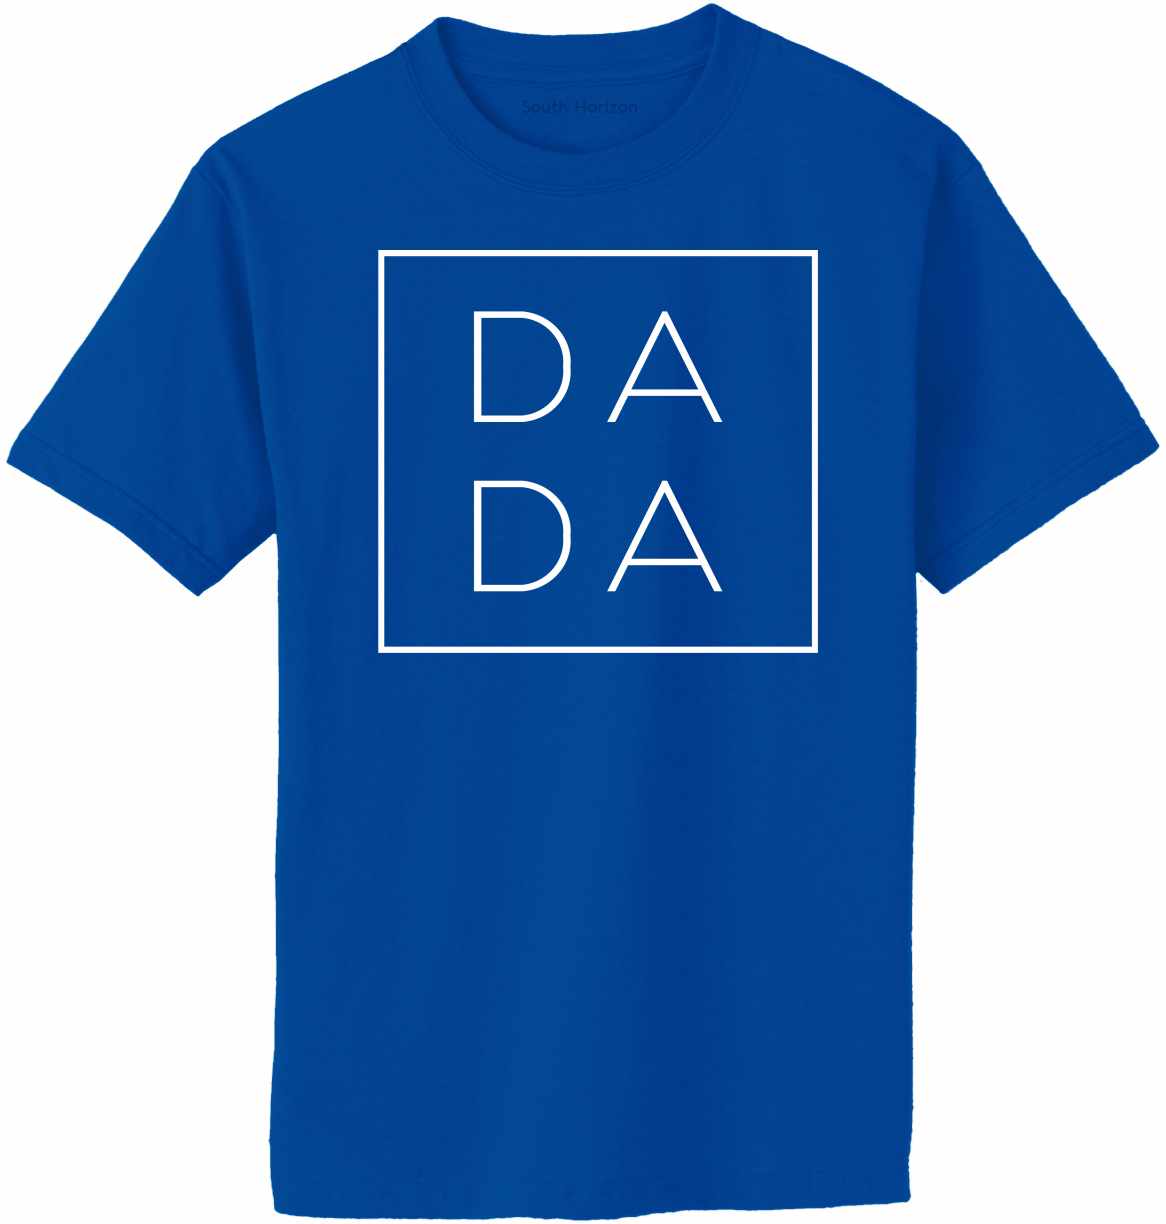 DA DA - Box on Adult T-Shirt